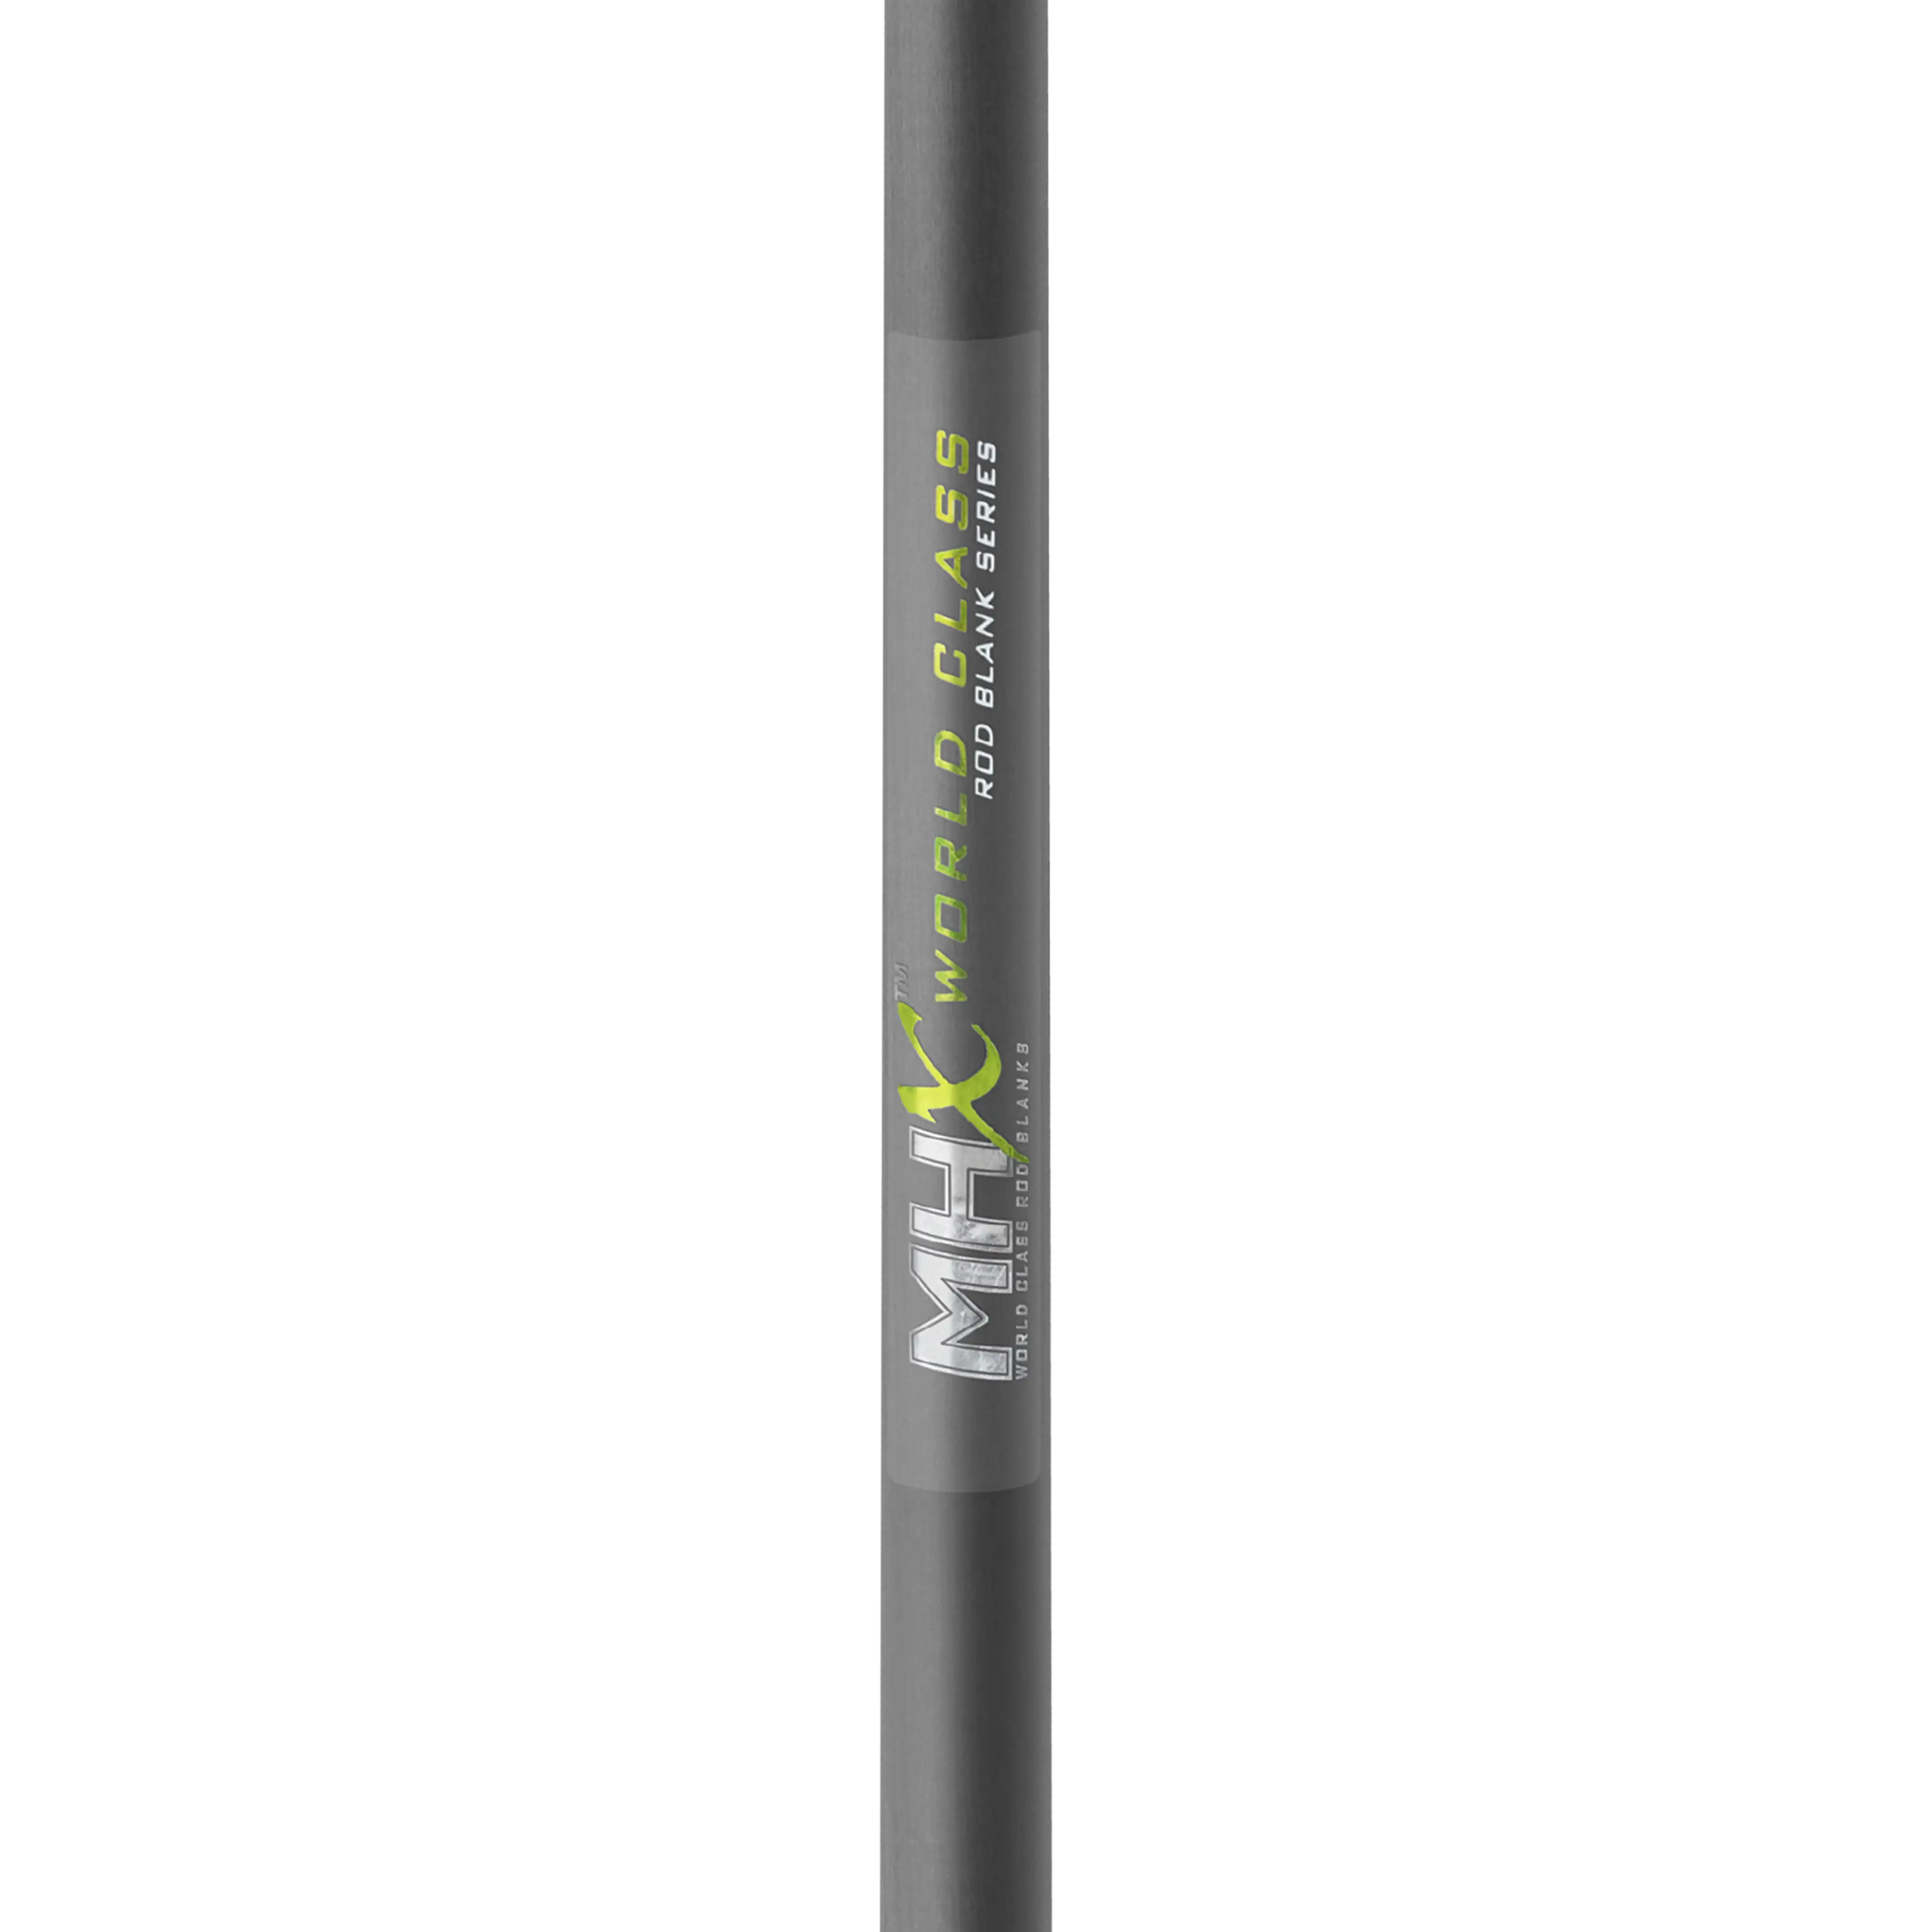 MHX 6'10 Light Drop Shot Rod Blank - DS821-Blend